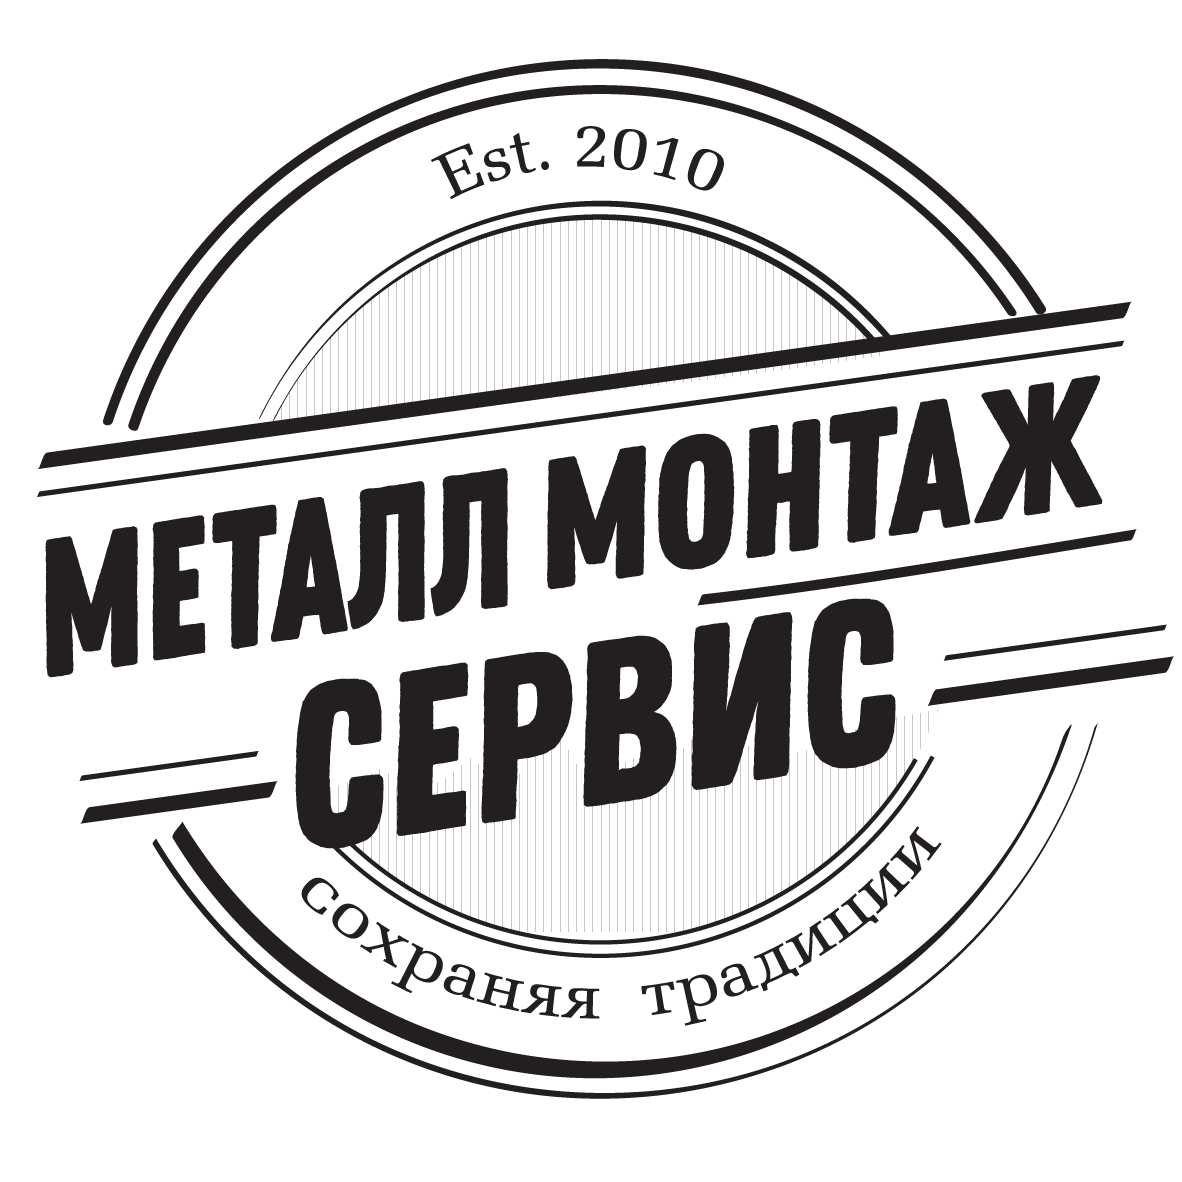 МеталлМонтажСервис - Город Москва logo.png